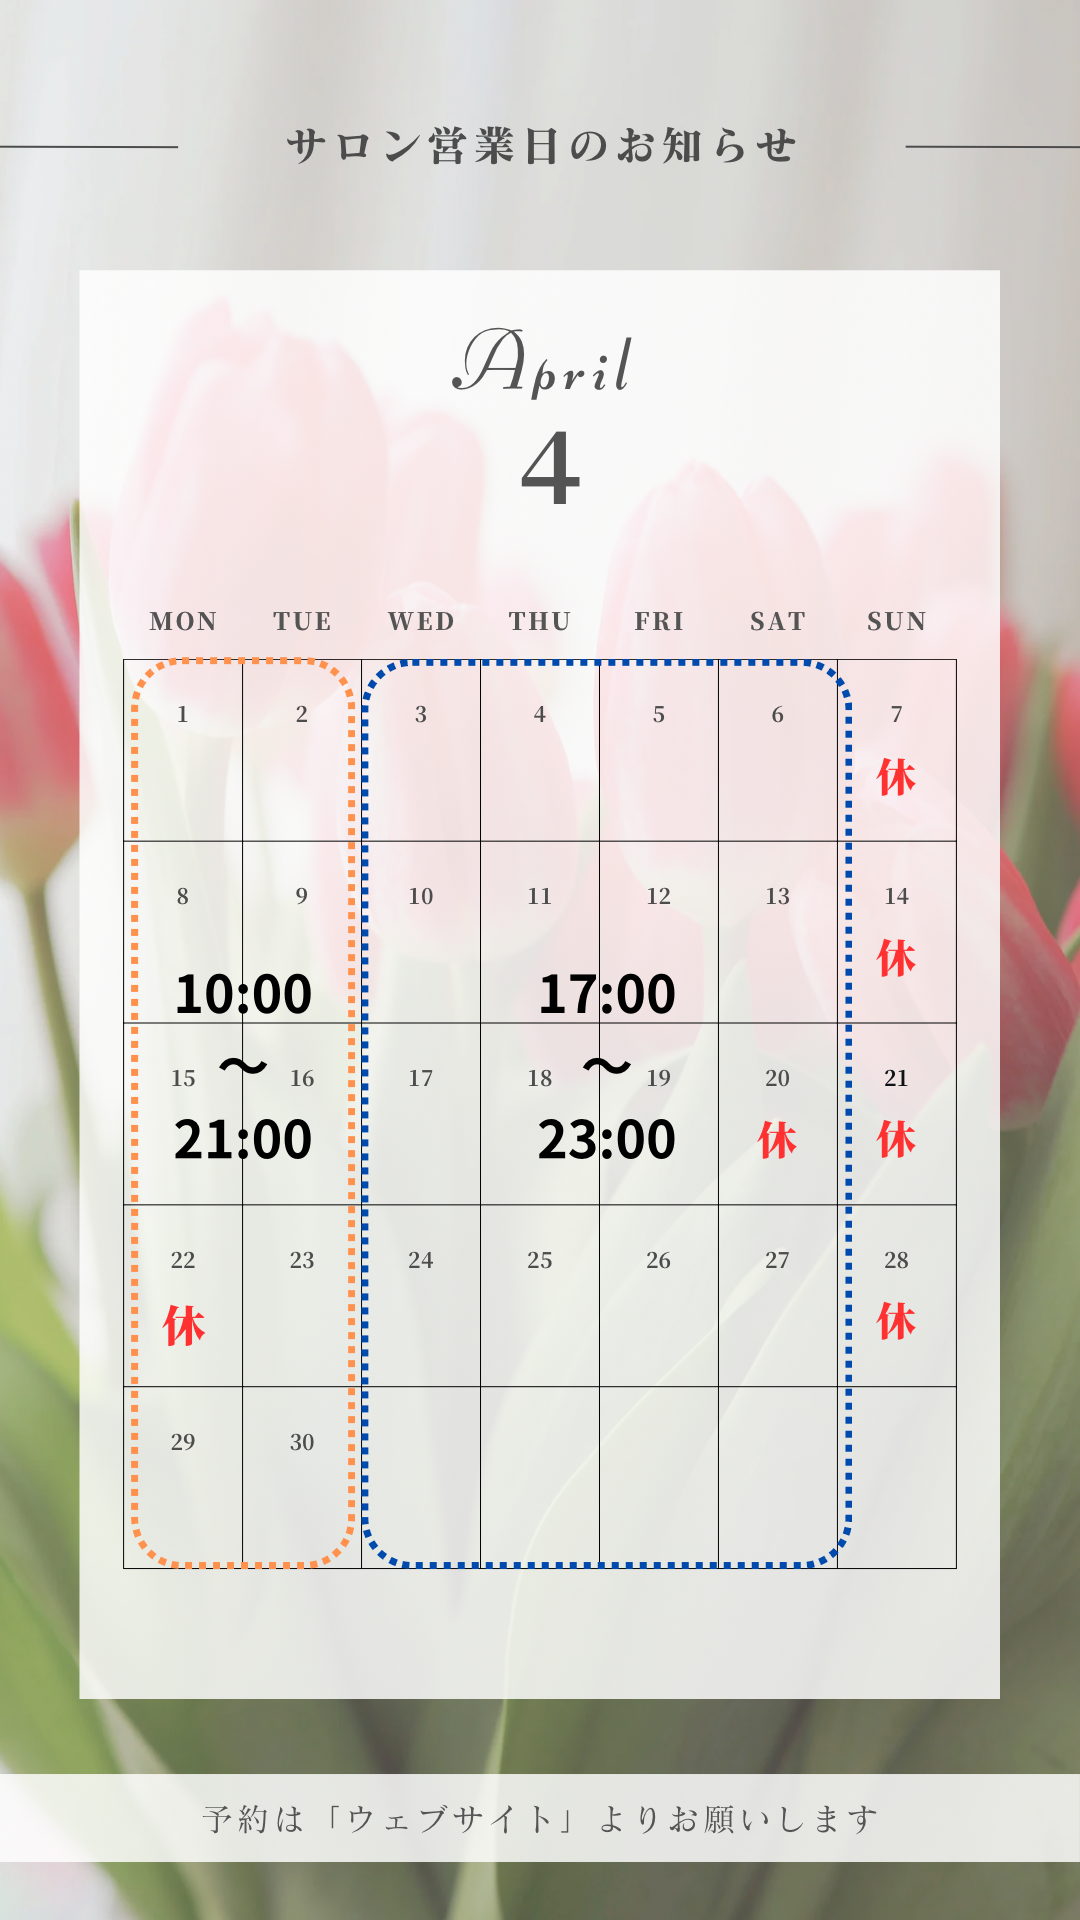 4月の営業日のカレンダー